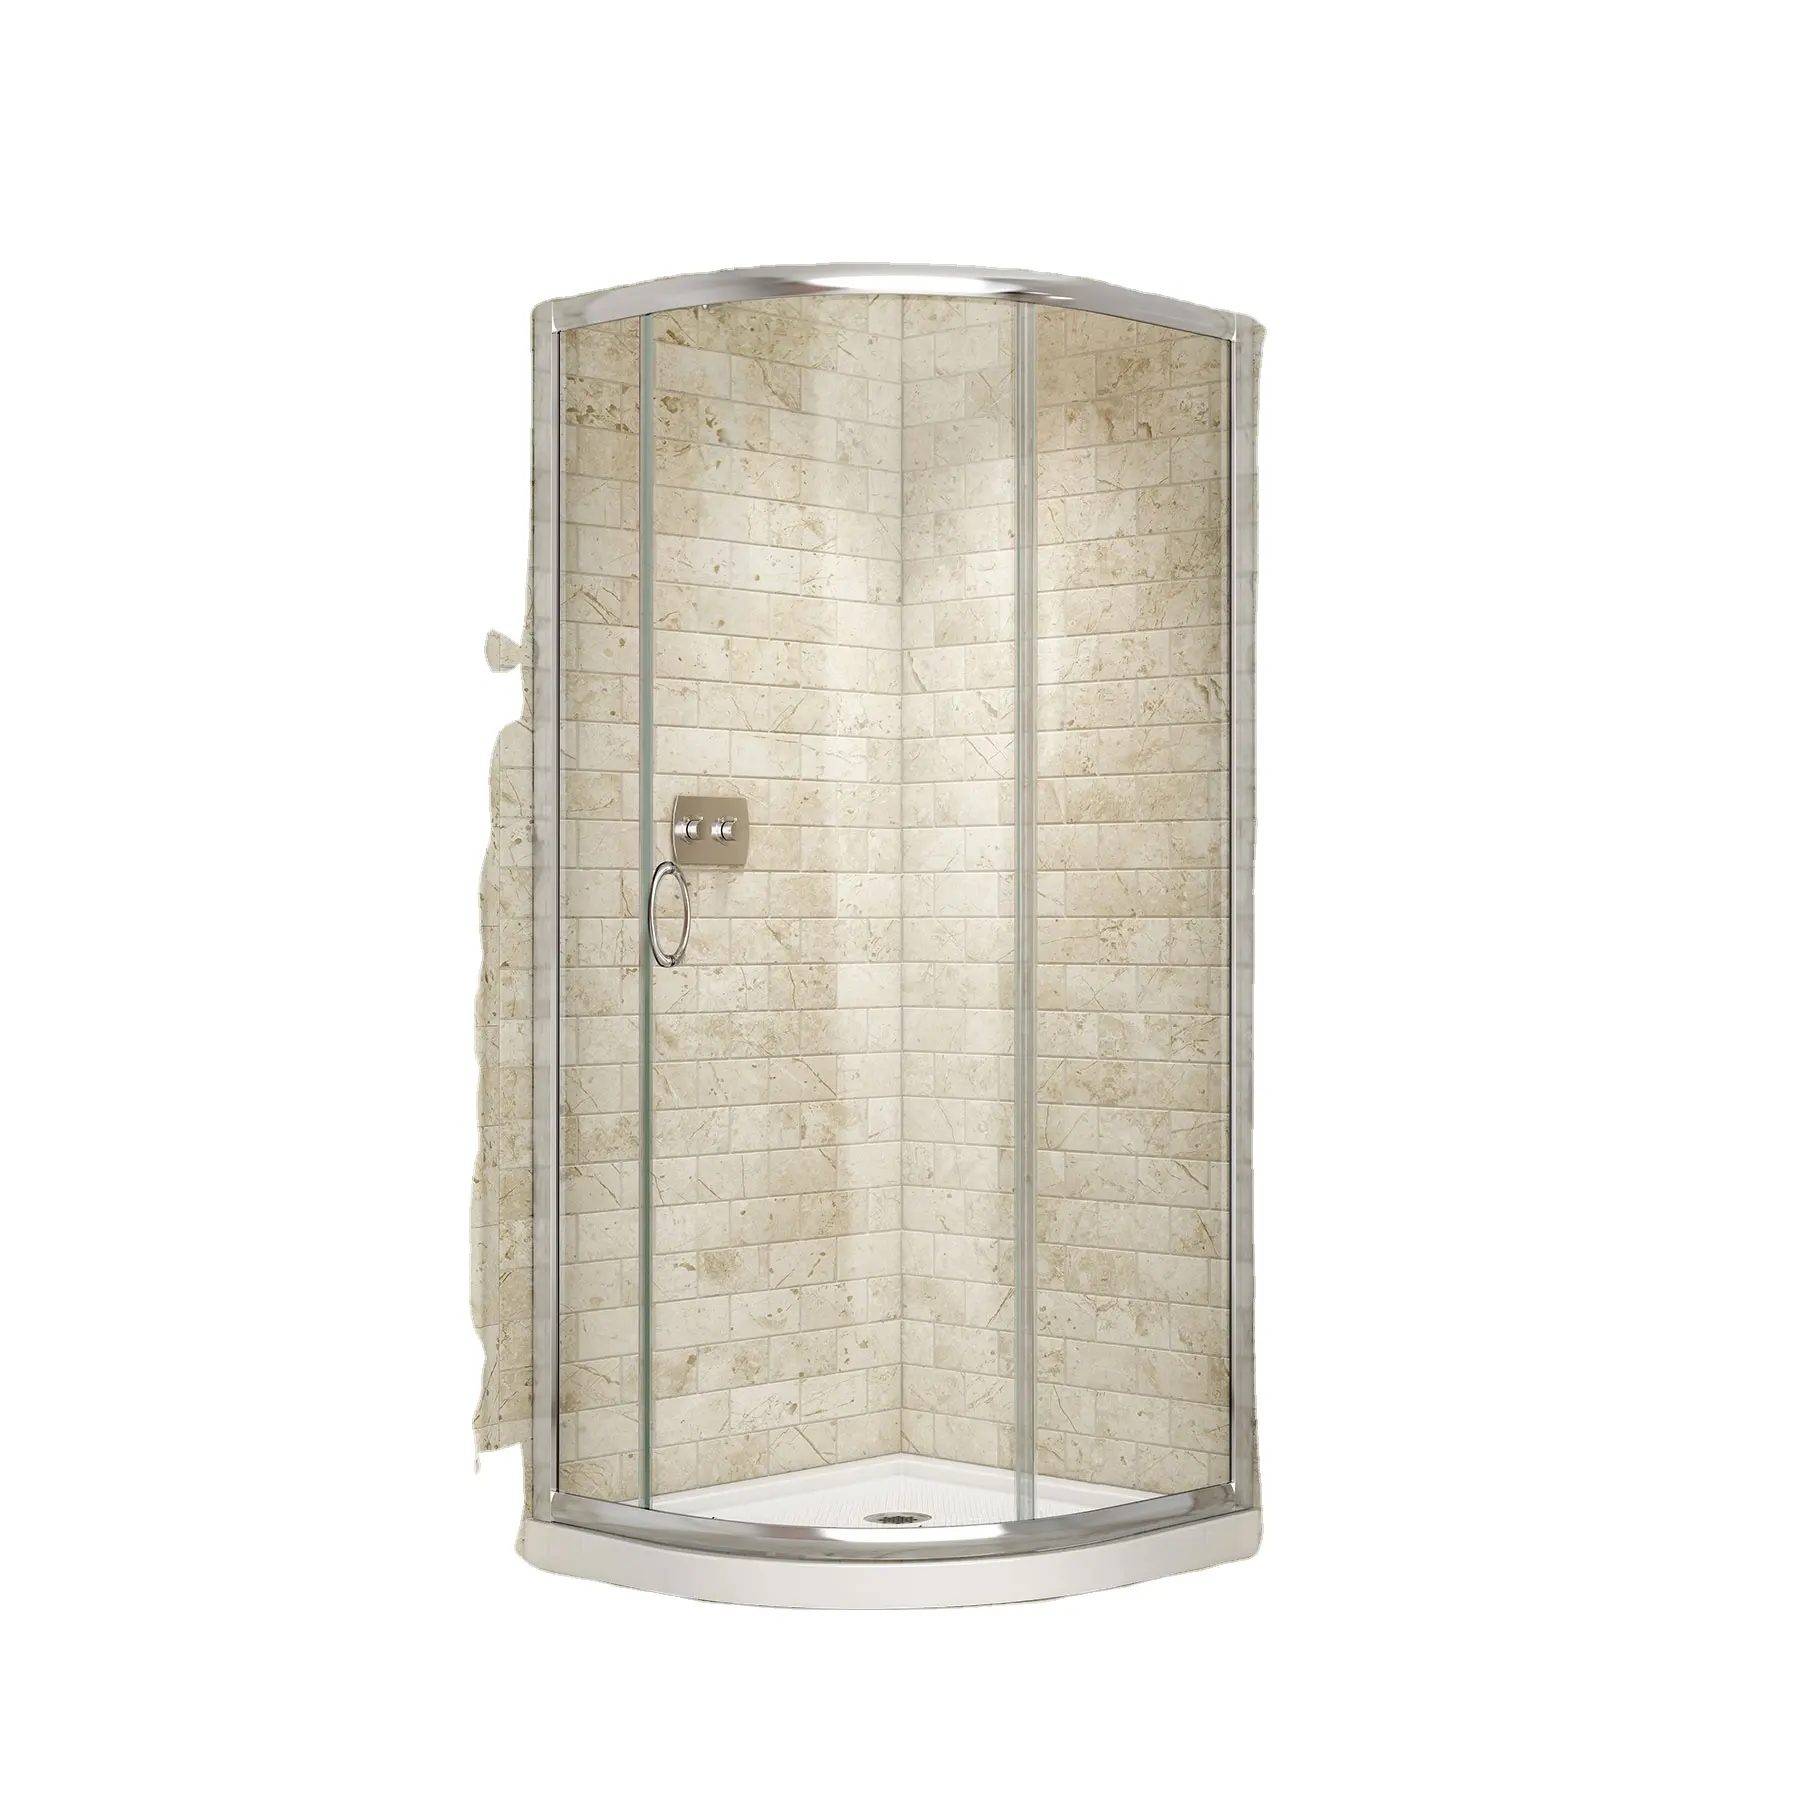 뜨거운 판매 샤워 박스 강화 유리 ABS 트레이 코너 욕실 샤워 캐빈 또는 측면 샤워 슬라이딩 도어 좋은 품질